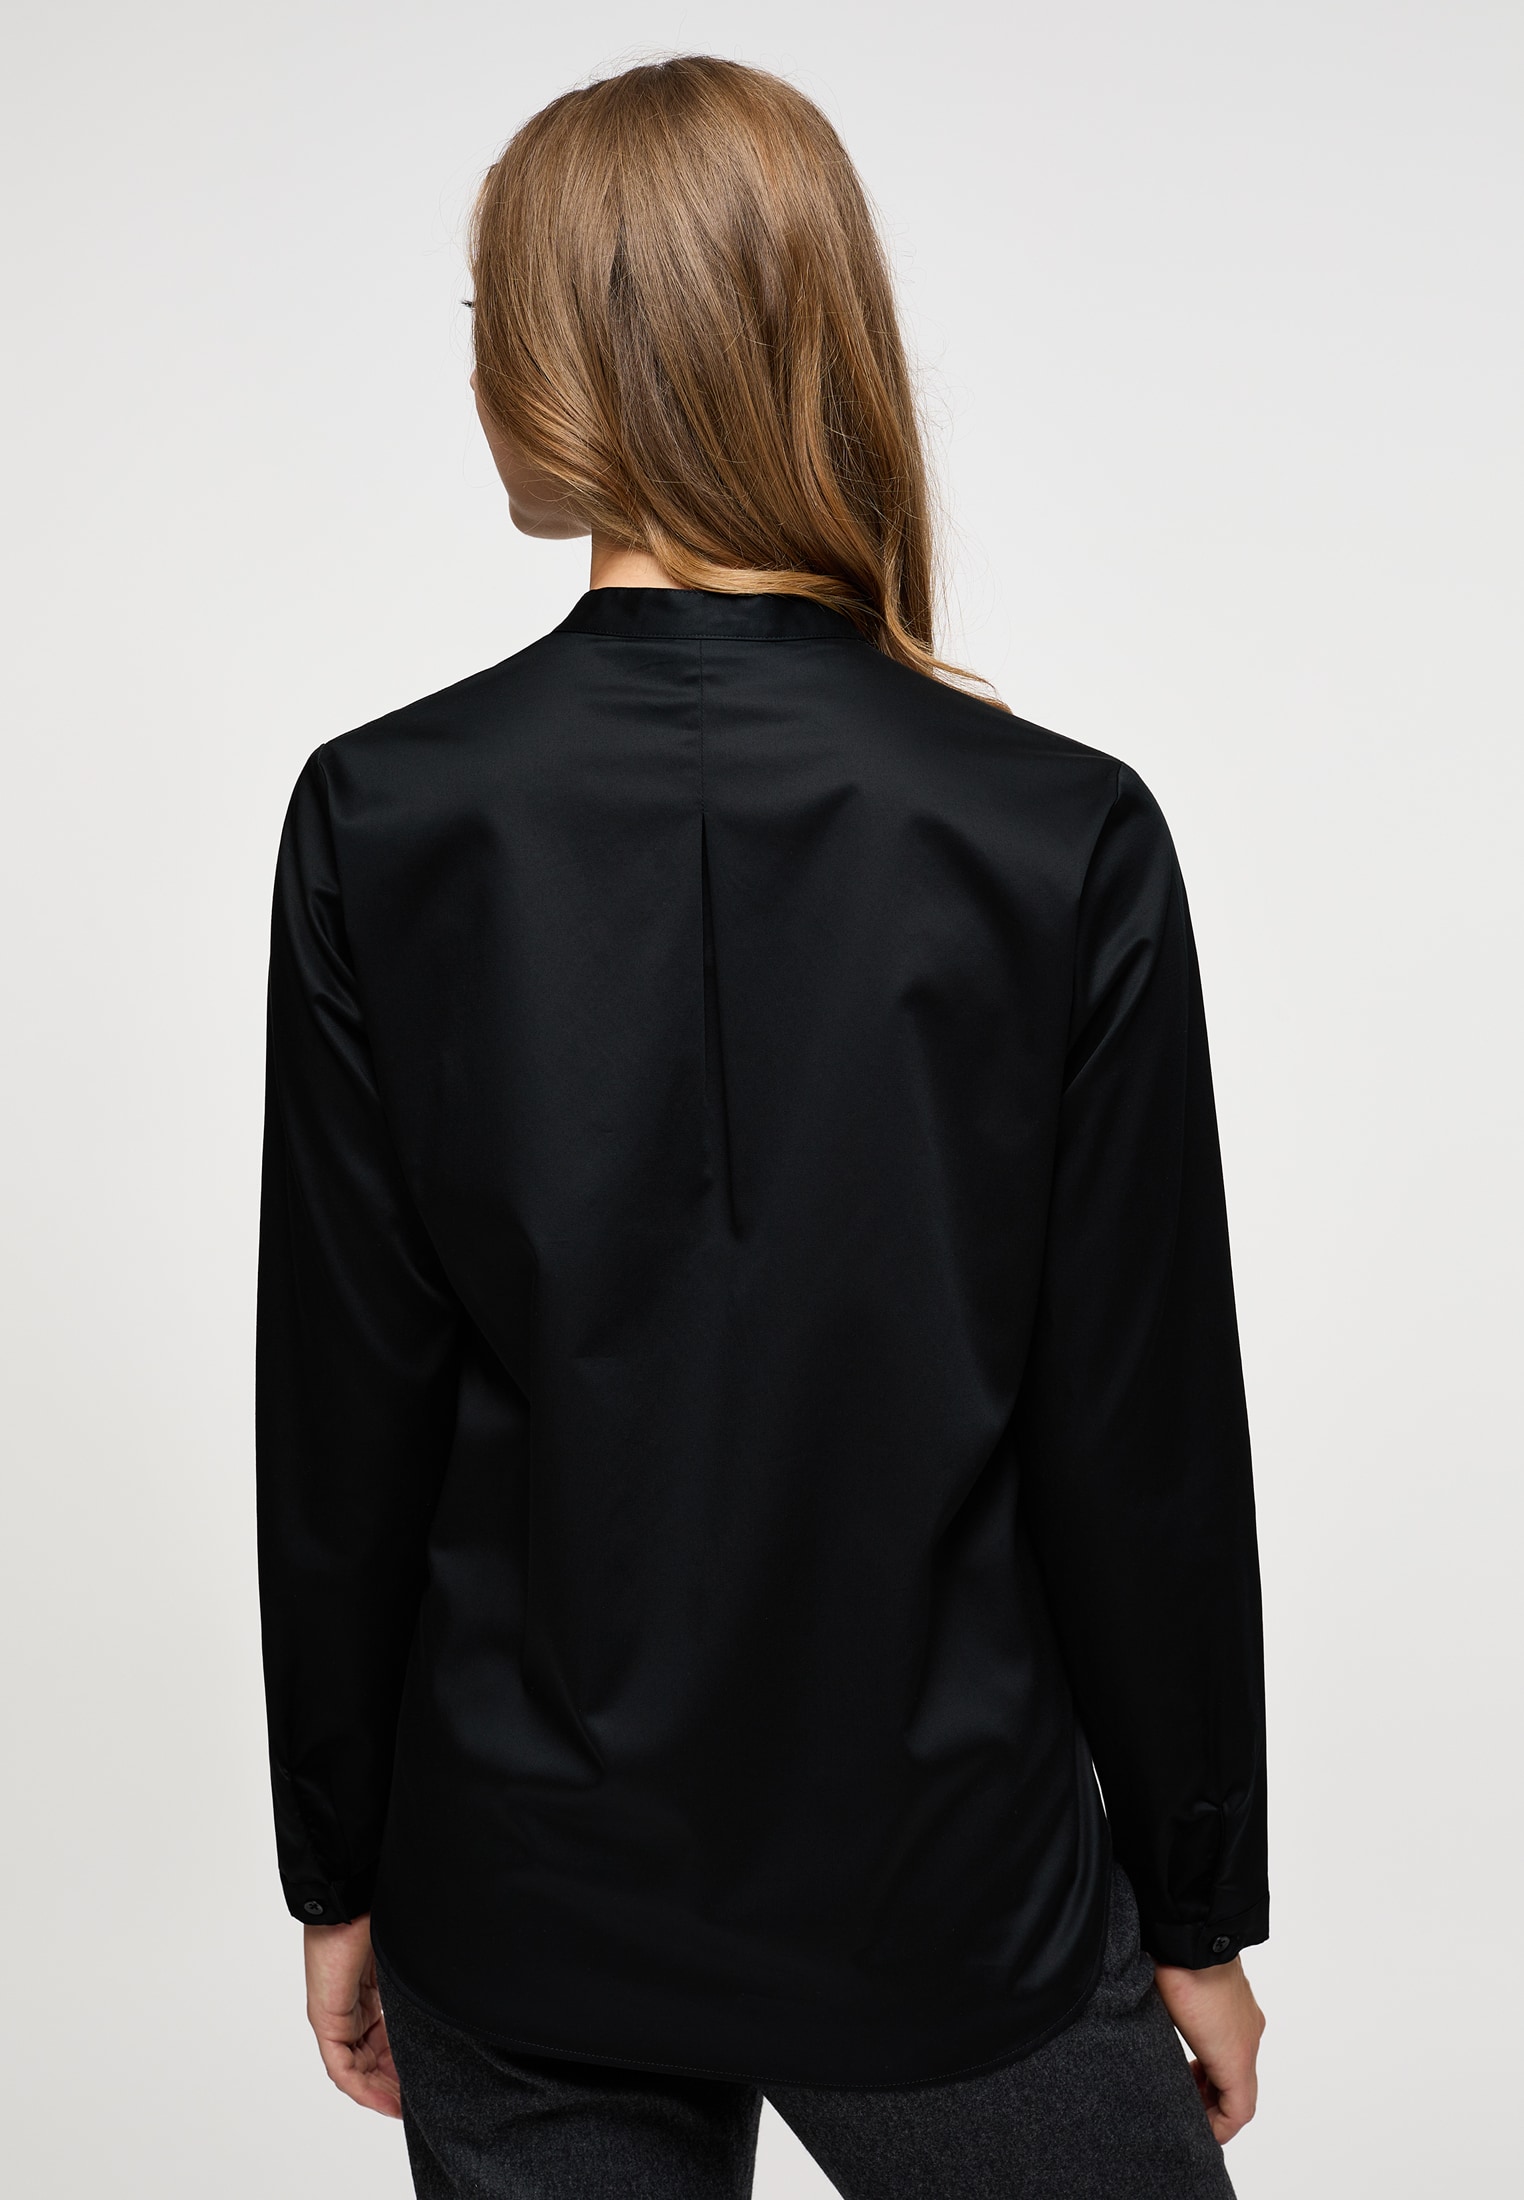 Satin Shirt Bluse in schwarz unifarben | schwarz | 46 | Langarm |  2BL00618-03-91-46-1/1